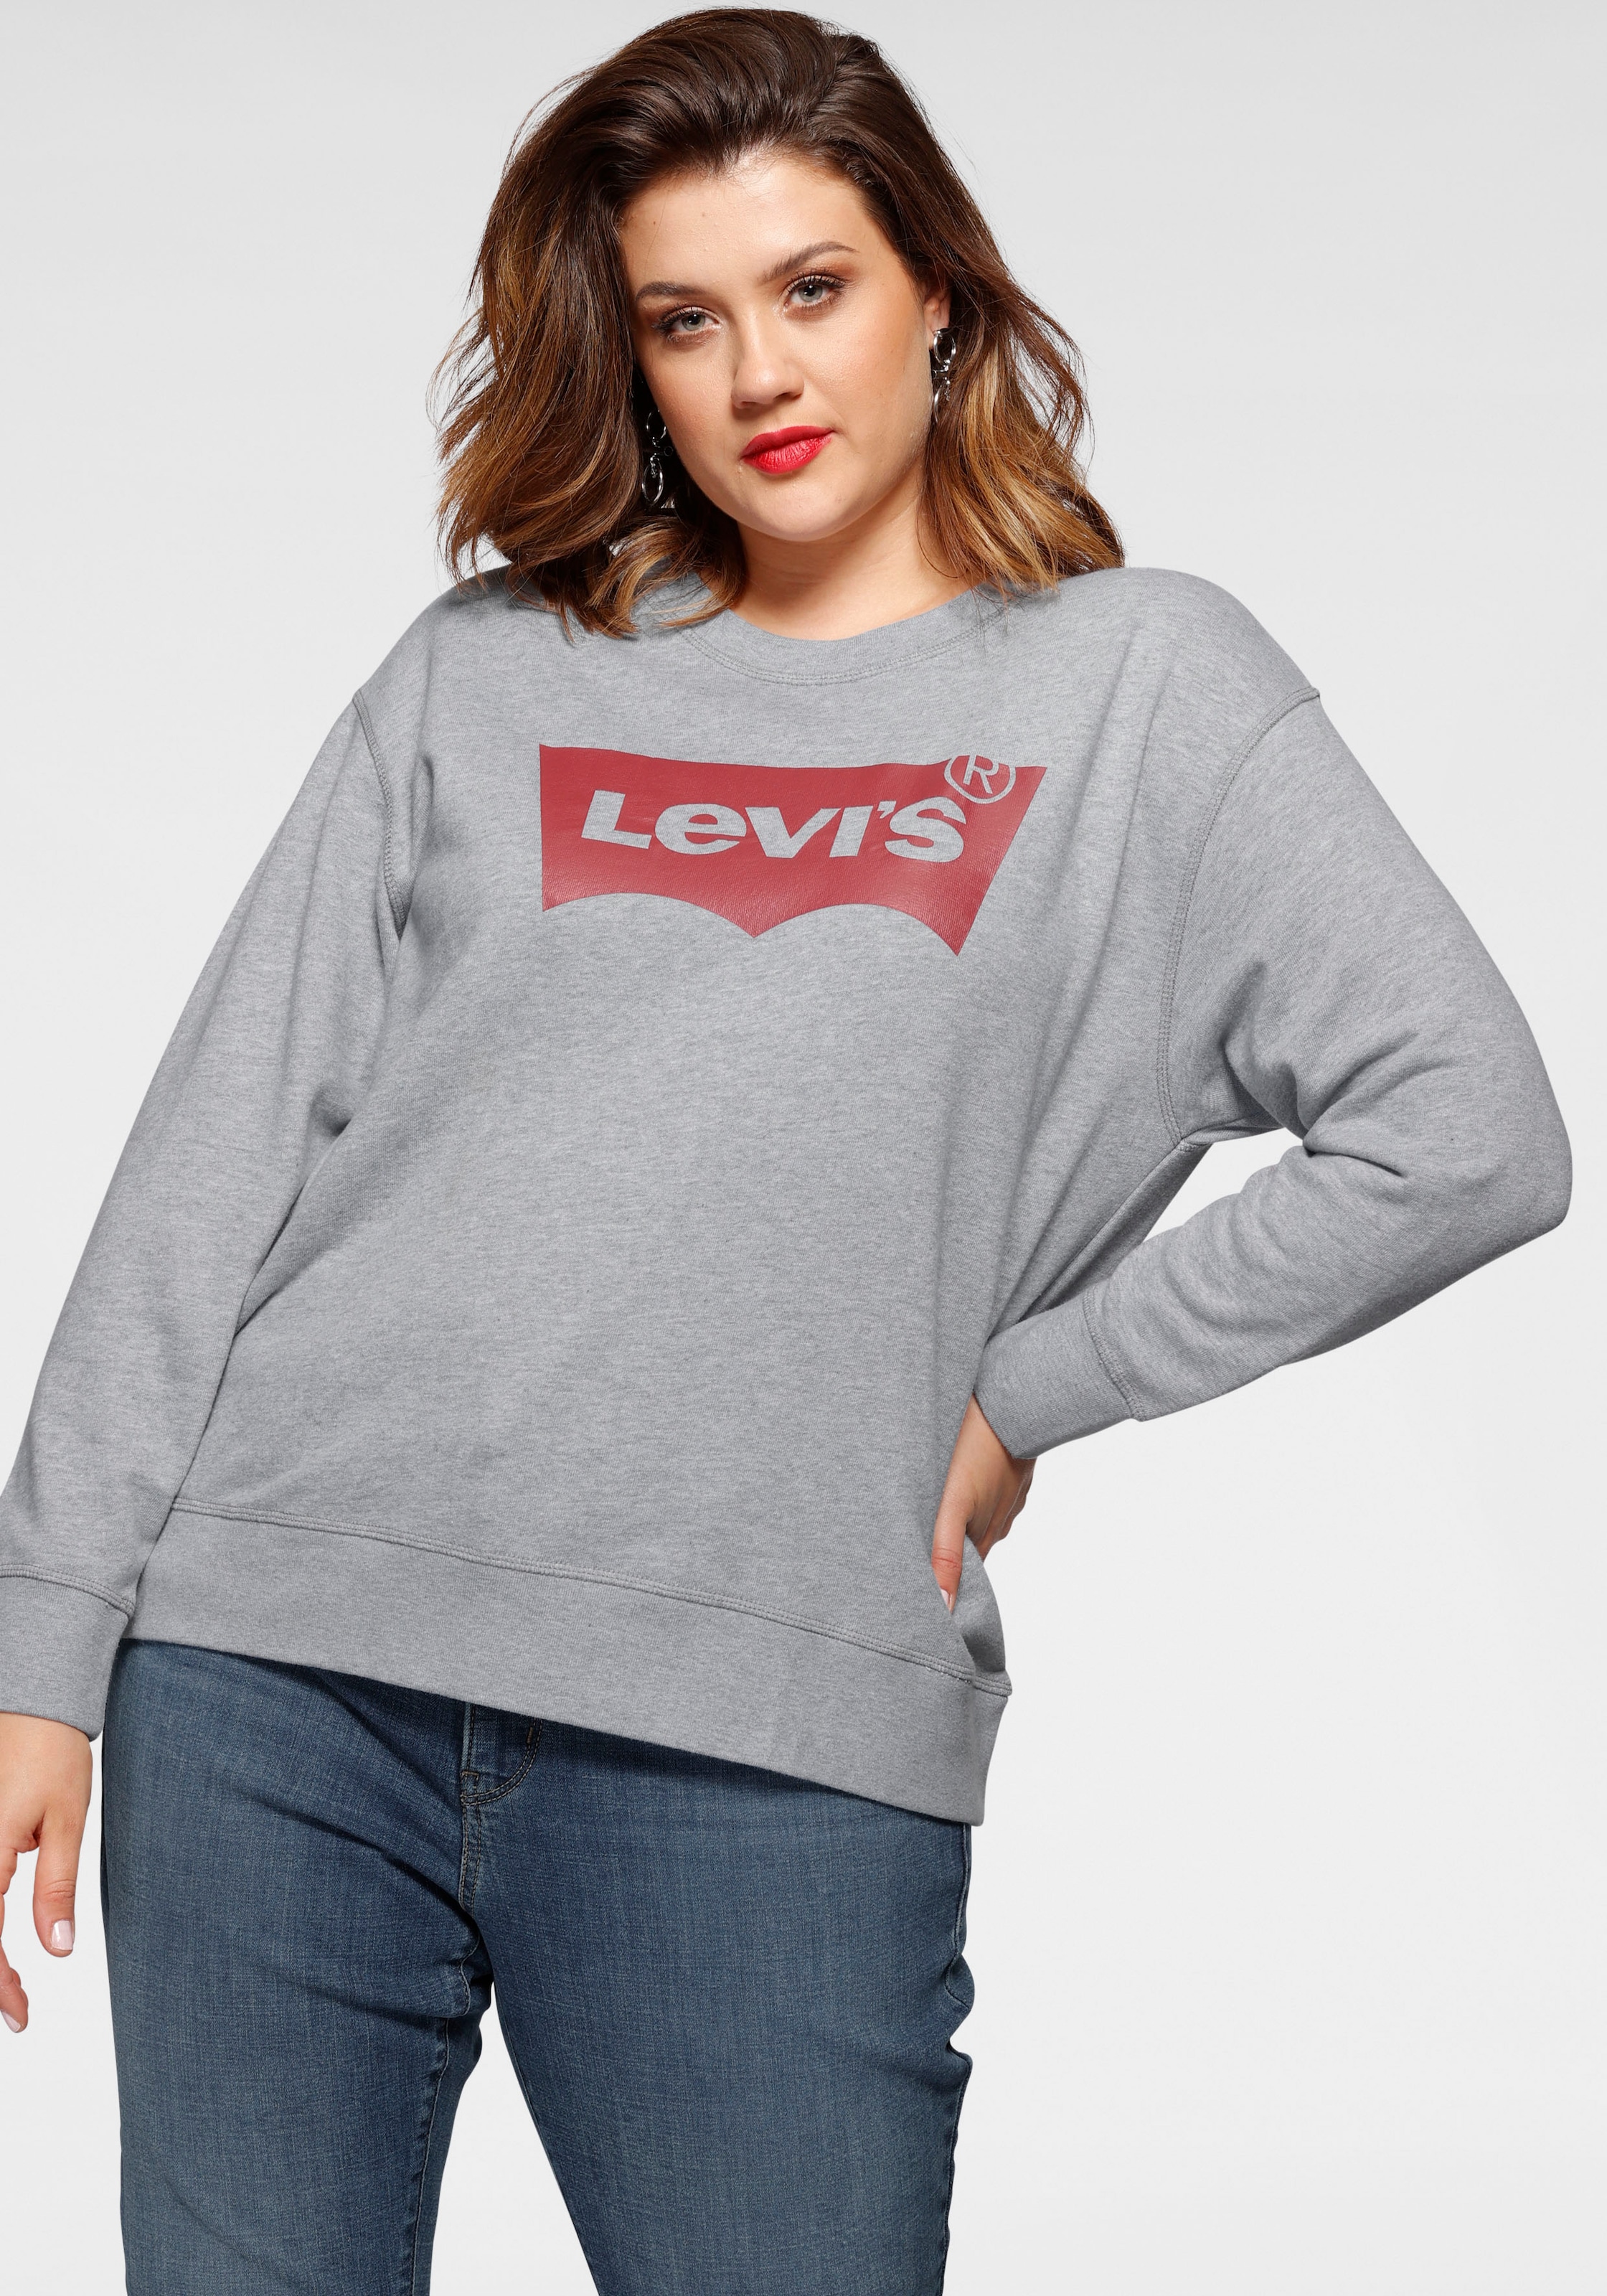 günstige Sweatshirts & -jacken in Top-Preisen kaufen OTTO großen zu Größen online 